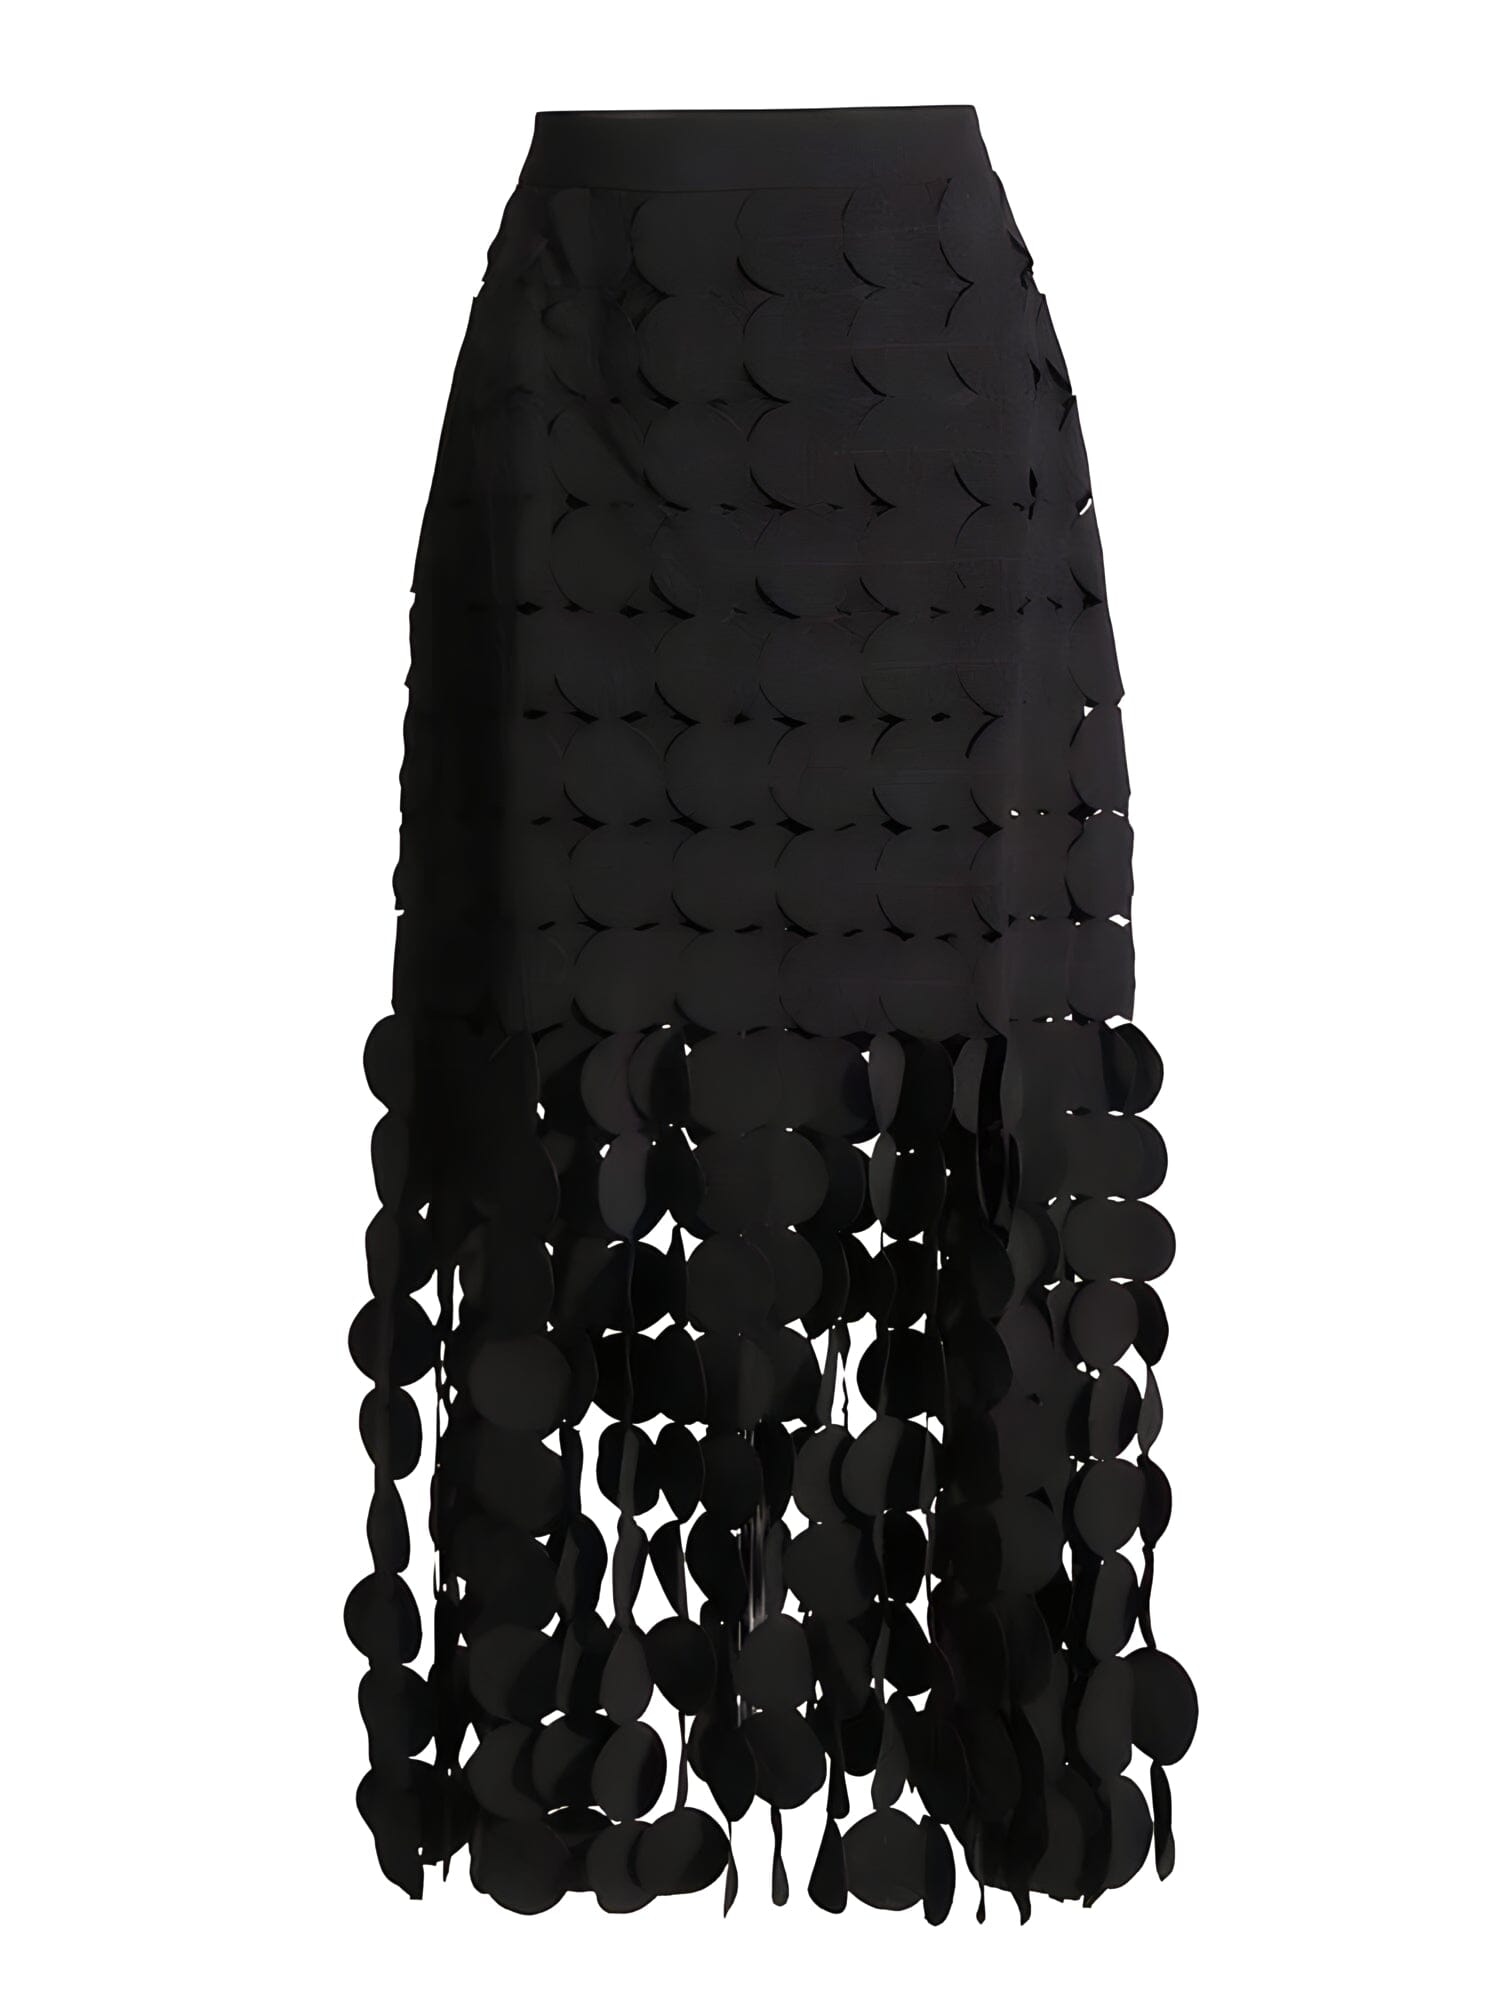 The Noir High Waist Skirt 0 SA Styles S 